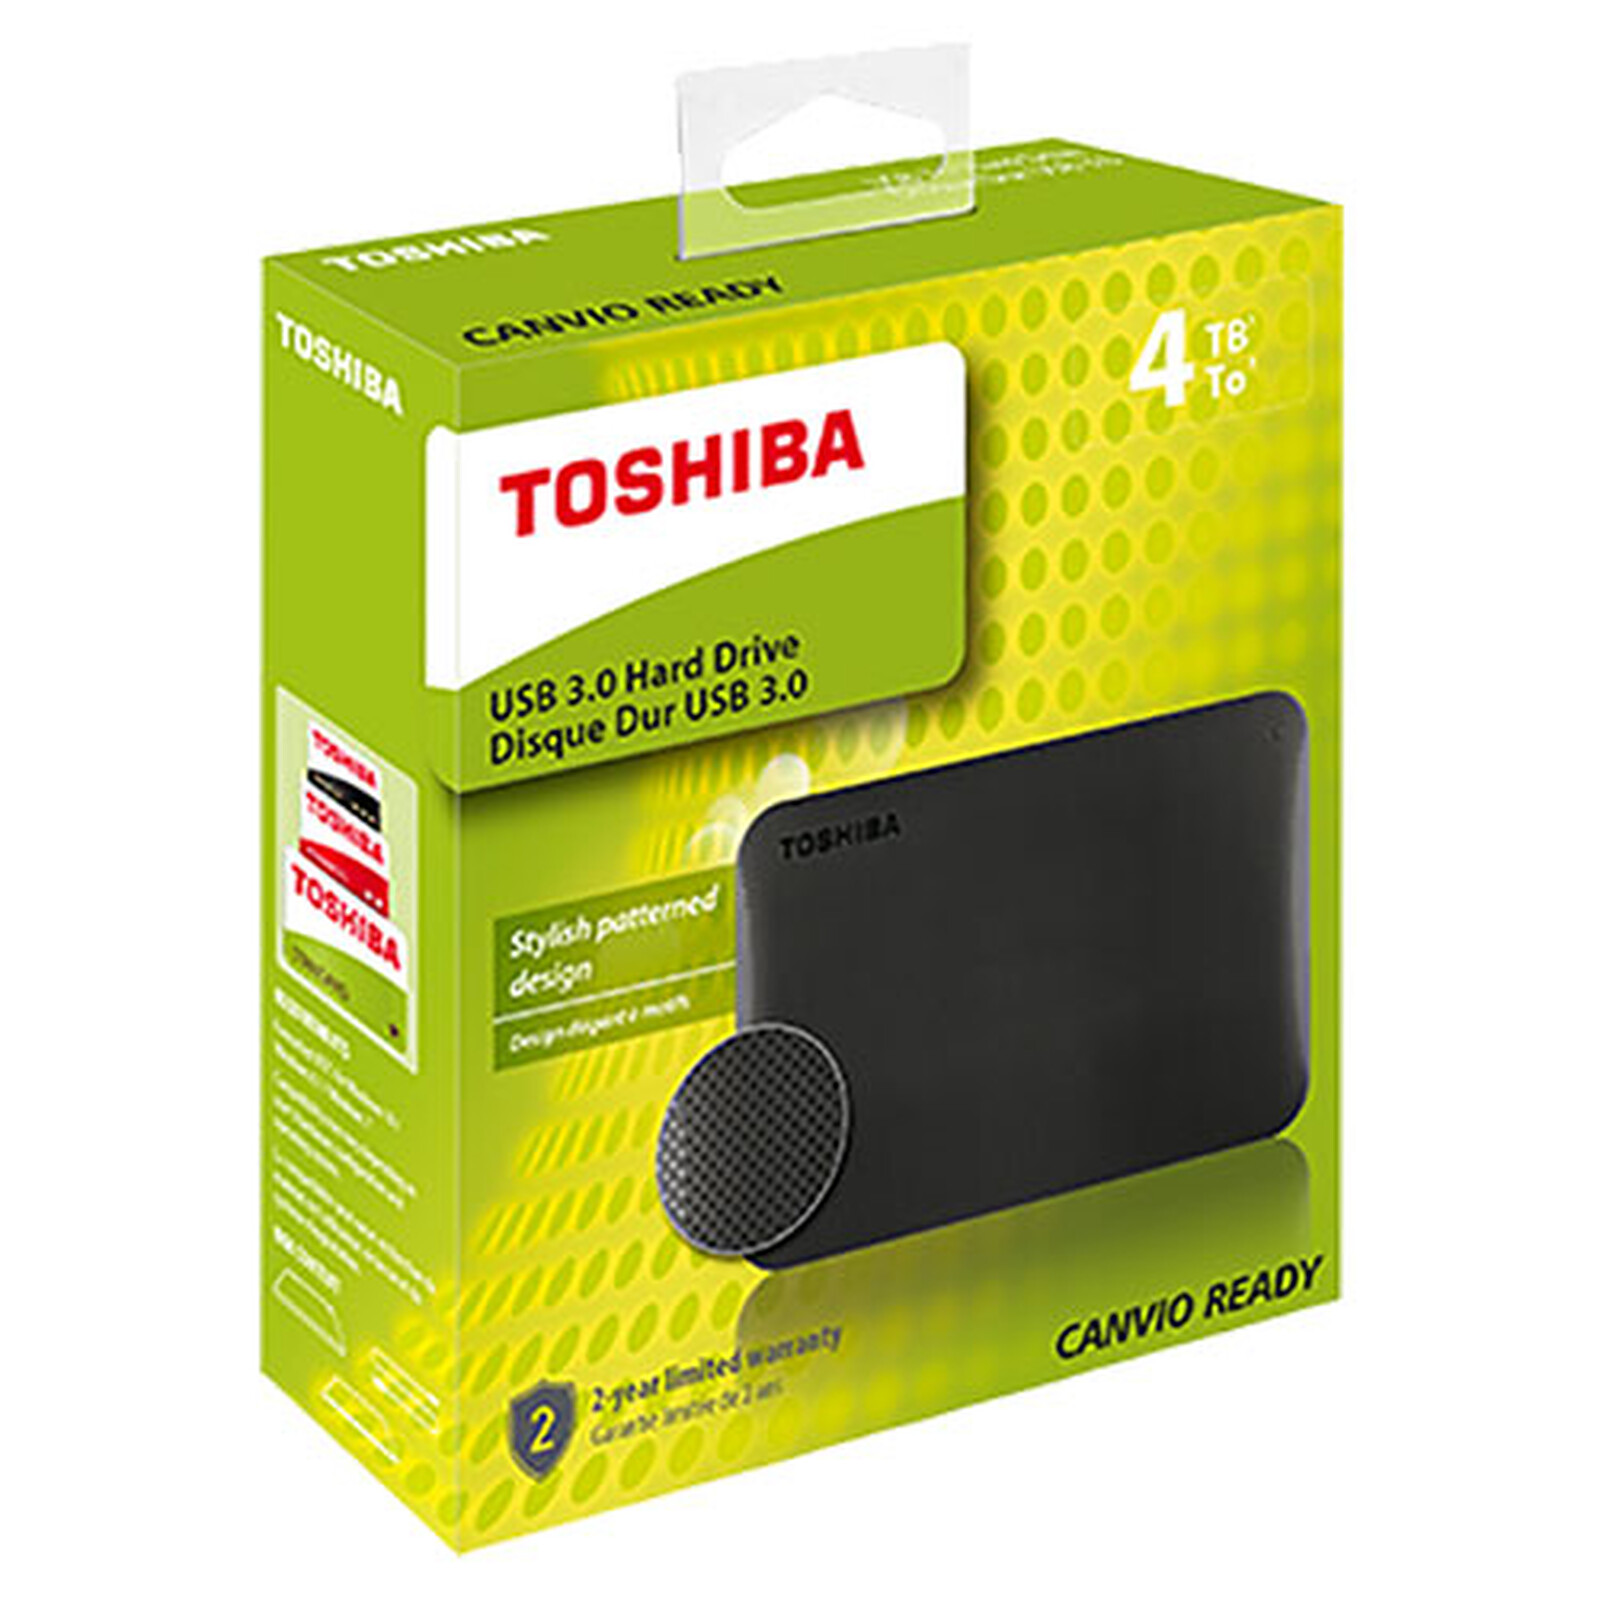 Toshiba Canvio Ready 2 To Noir - Disque dur externe - Garantie 3